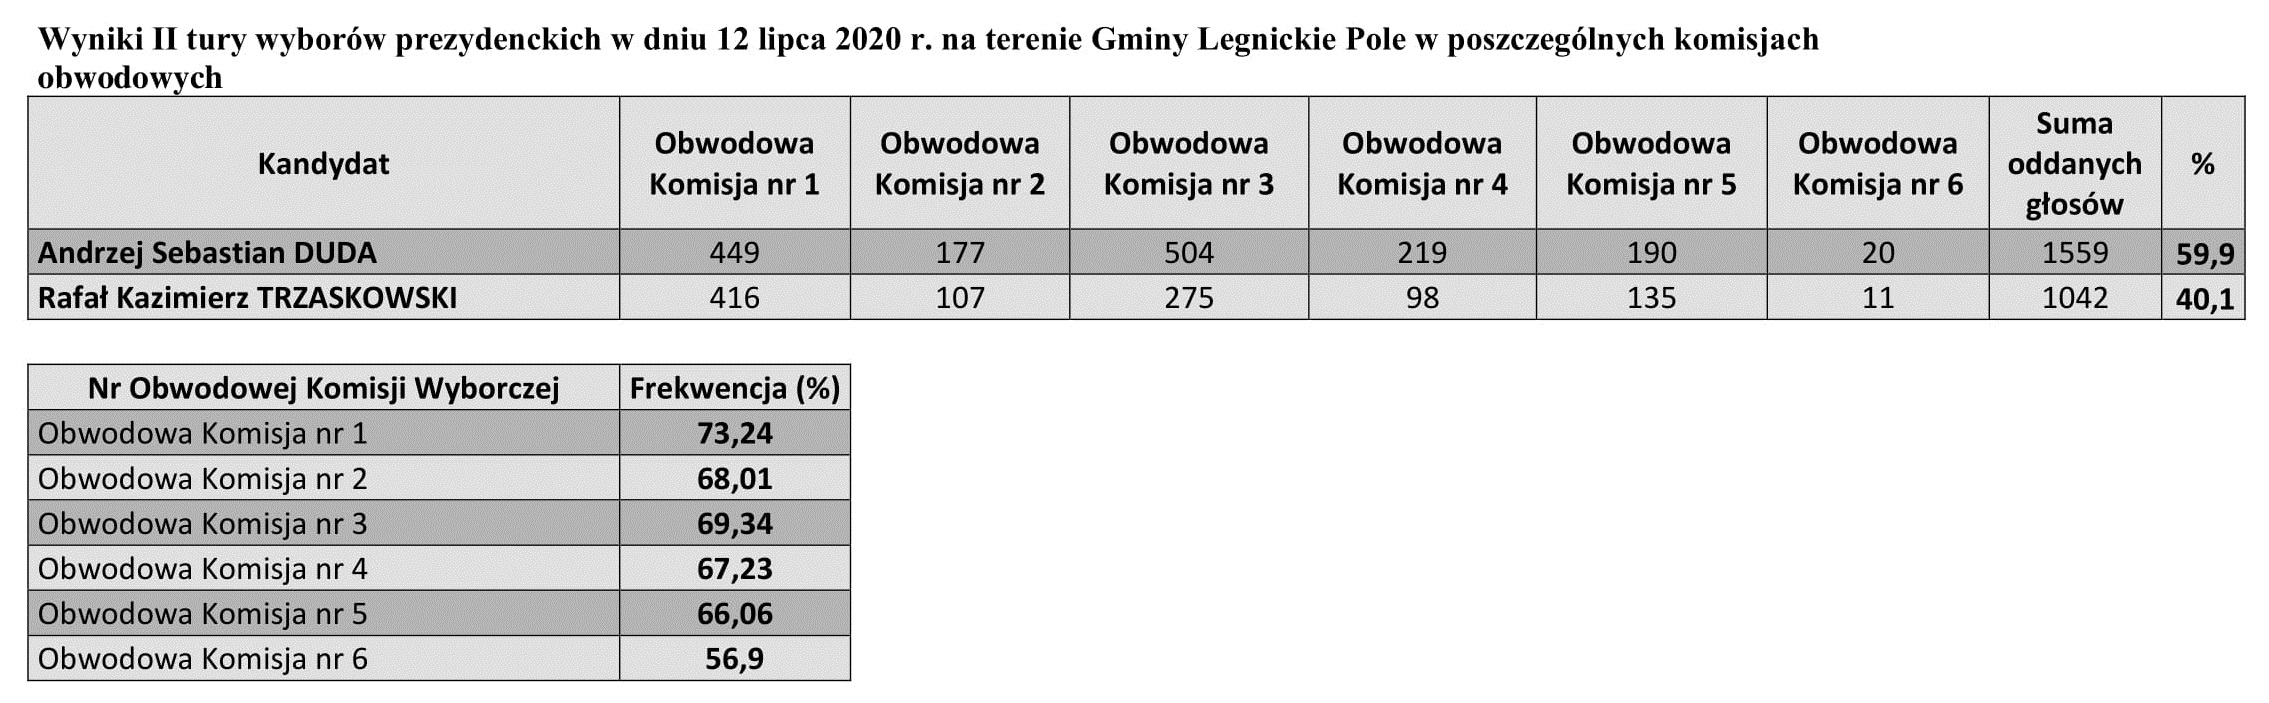 Wyniki_II_tury_wyborów_prezydenckich_w_dniu_12_lipca_2020_r.-1.jpg